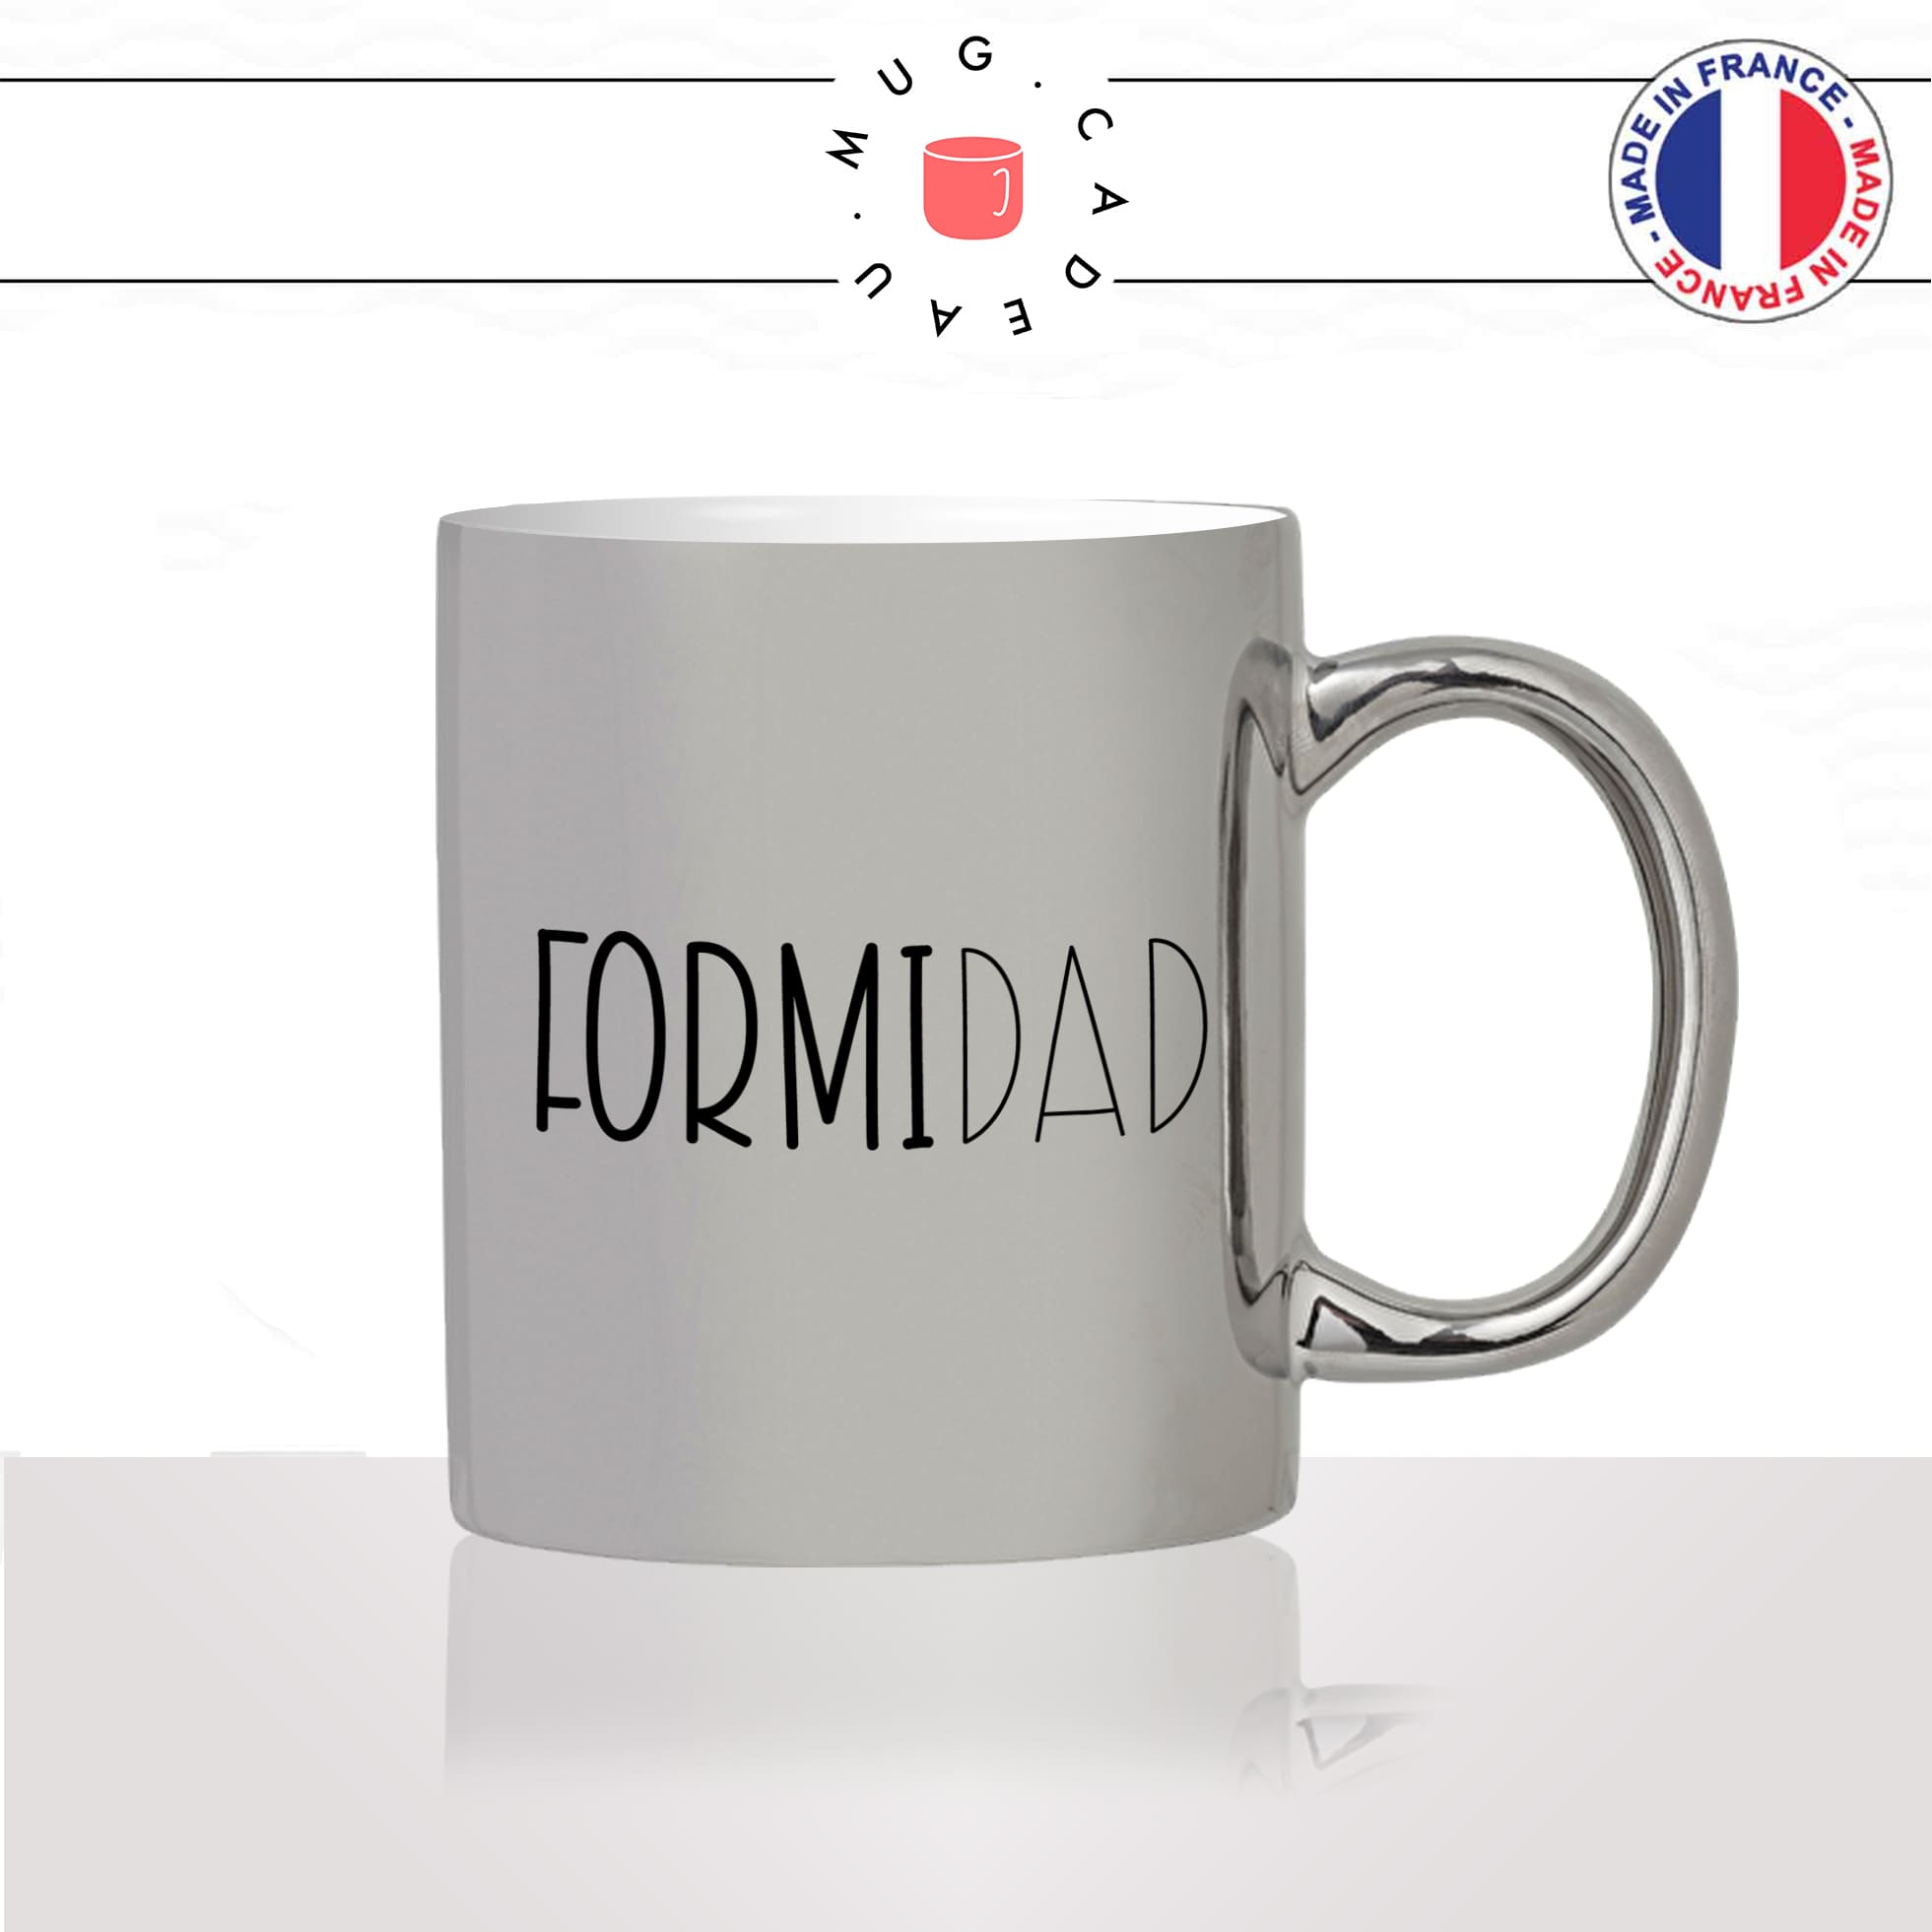 mug-tasse-argent-argenté-silver-fete-des-pères-formidad-formidable-dad-france-papa-homme-mignon-idée-cadeau-fun-cool-café-thé2